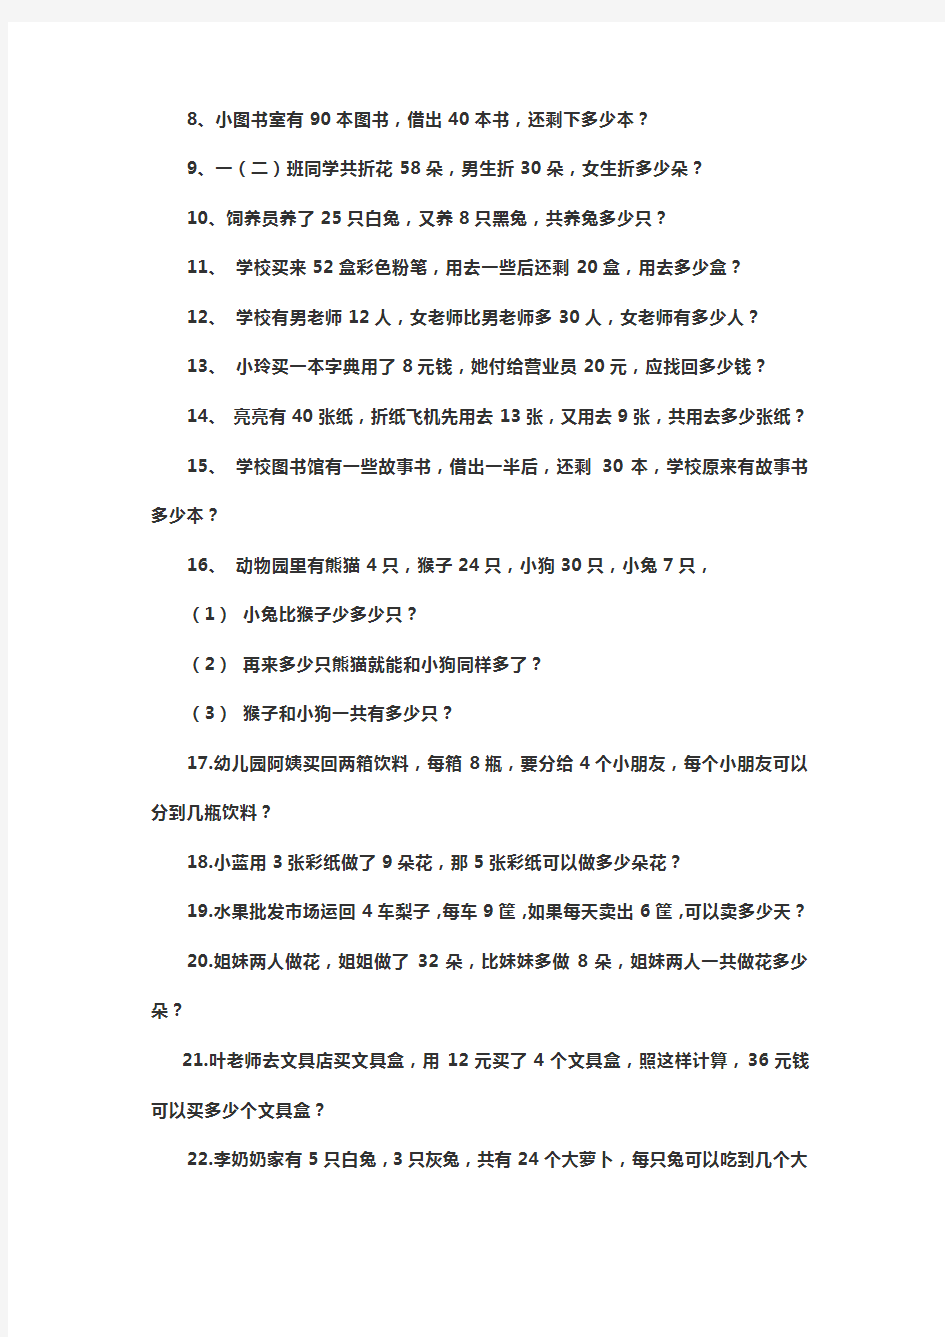 【深圳市】小学一年级数学下册应用题大全300题